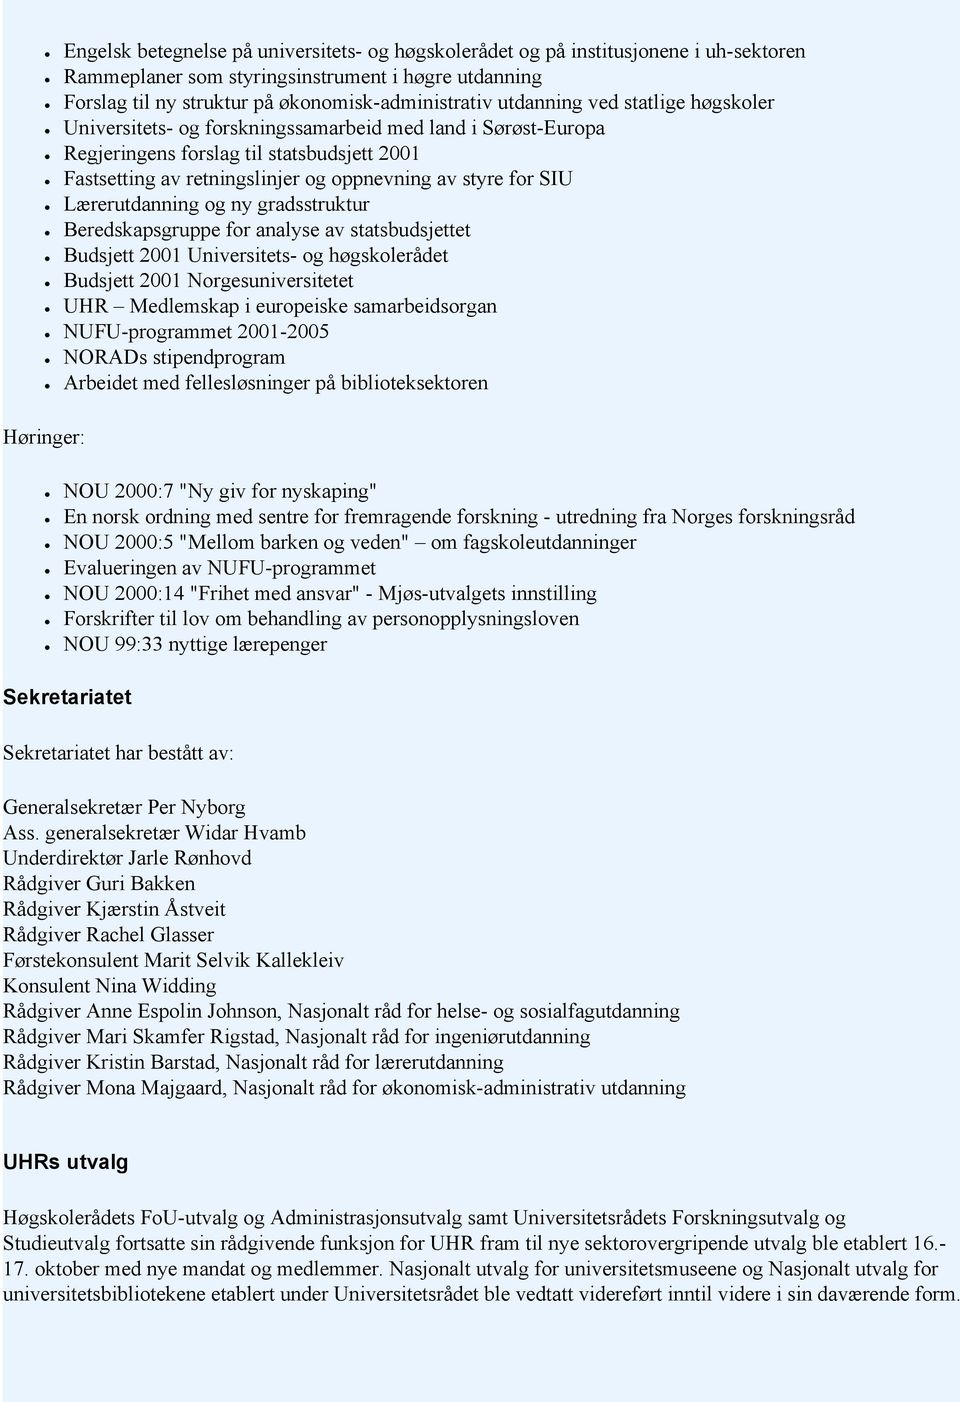 Lærerutdanning og ny gradsstruktur Beredskapsgruppe for analyse av statsbudsjettet Budsjett 2001 Universitets- og høgskolerådet Budsjett 2001 Norgesuniversitetet UHR Medlemskap i europeiske